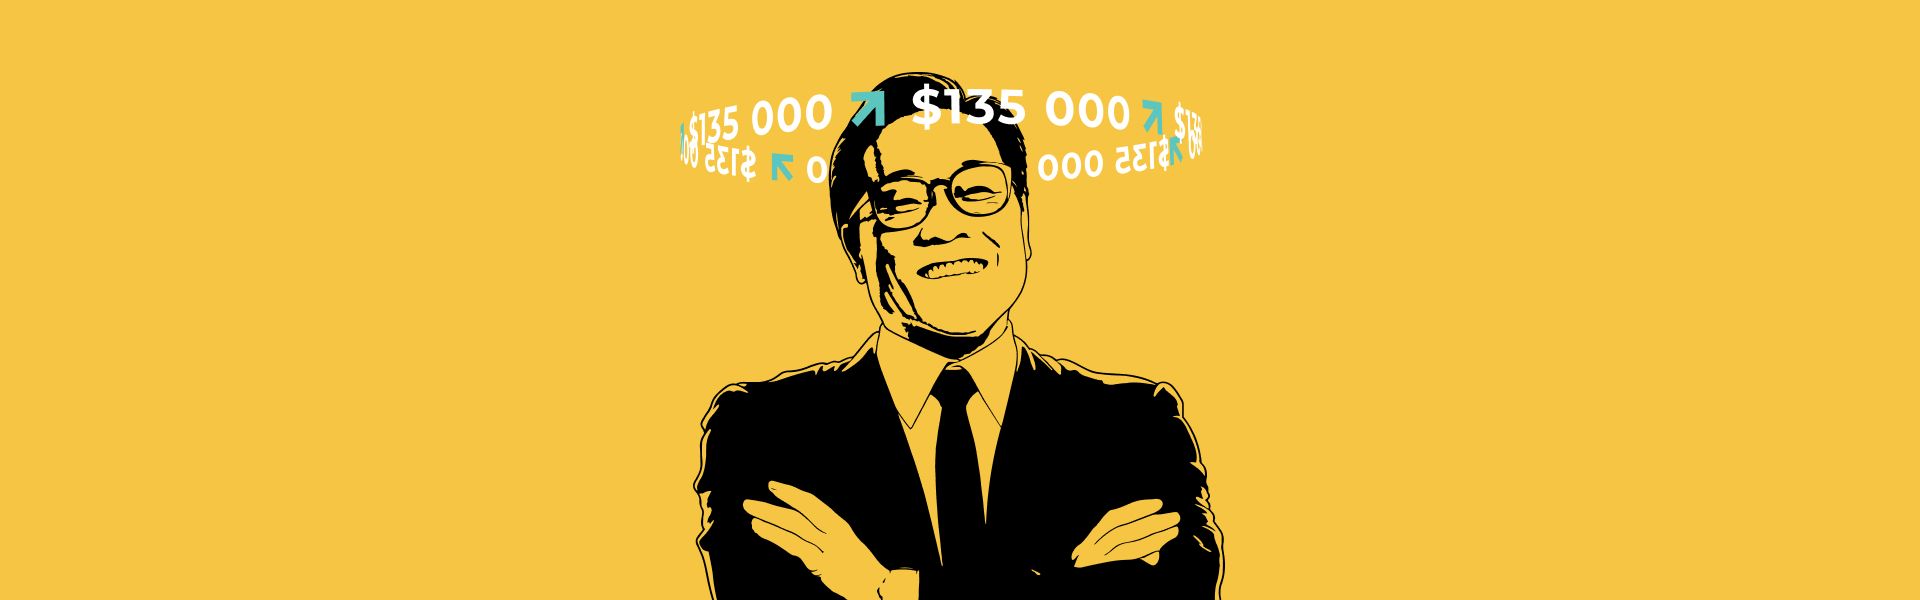 Роберт Кійосакі прогнозує біткоїн за $135 000